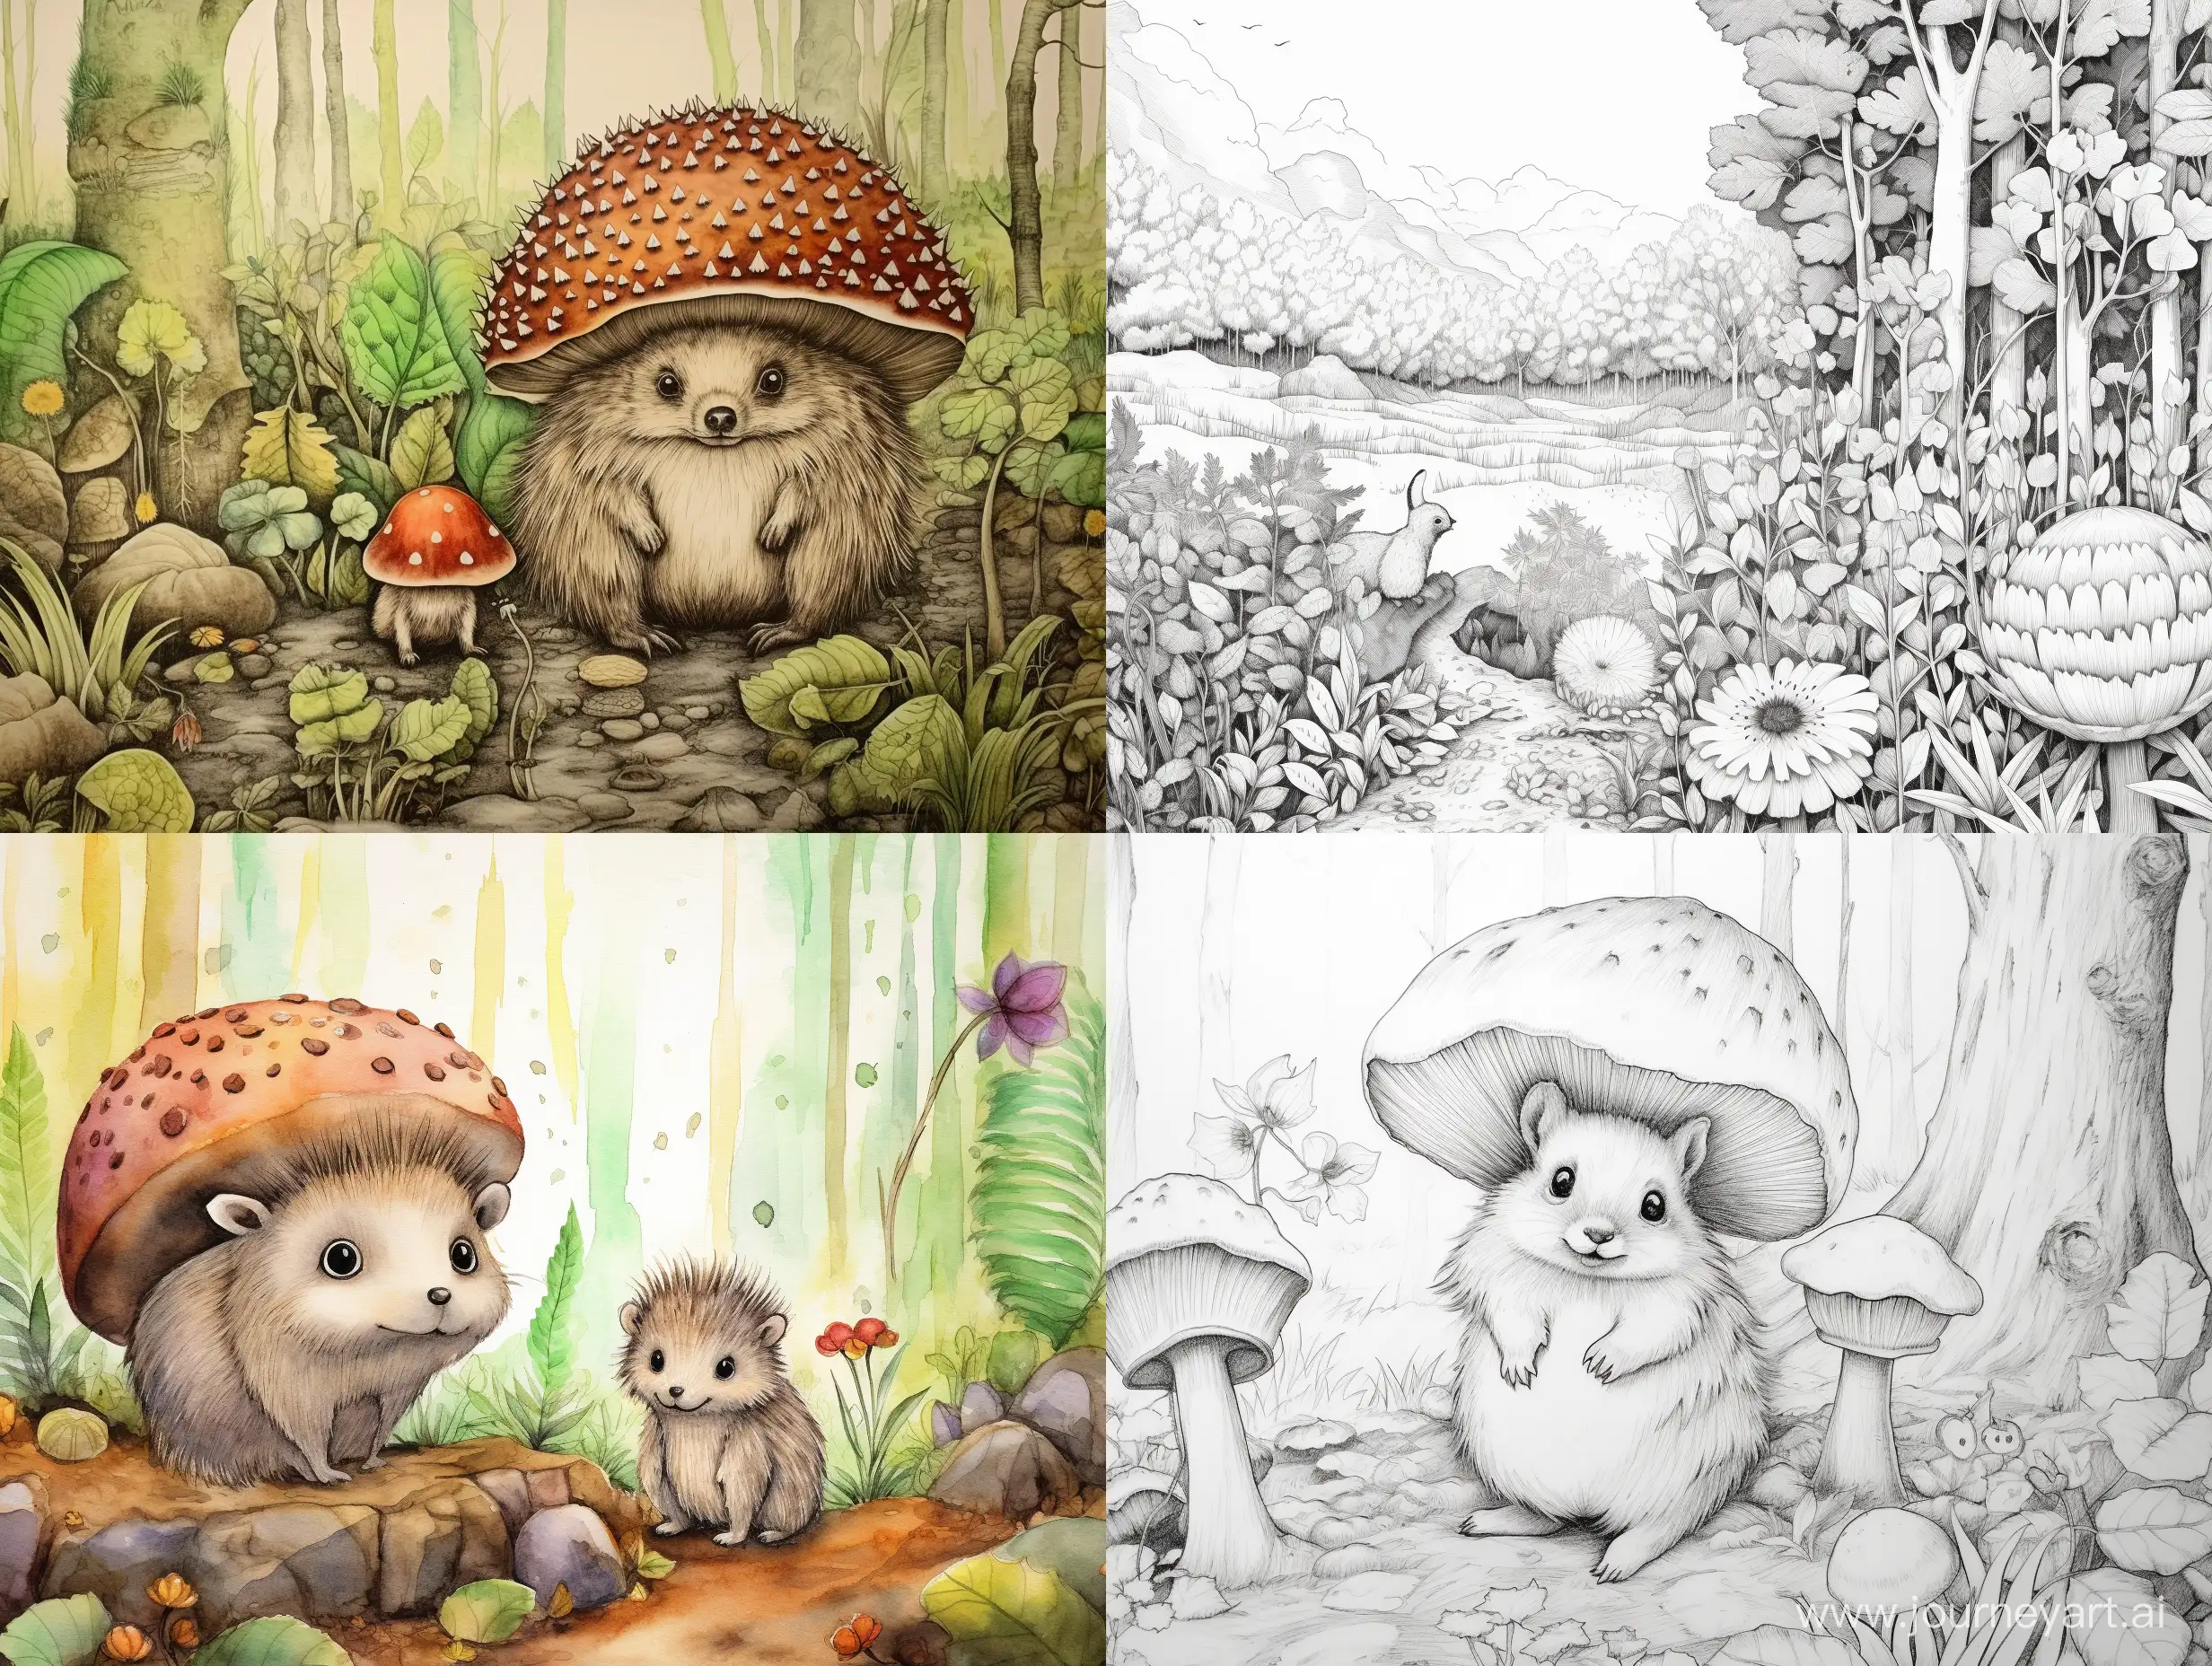 Enchanting-Forest-Scene-Hedgehog-and-Squirrel-Illustration-under-a-Burdock